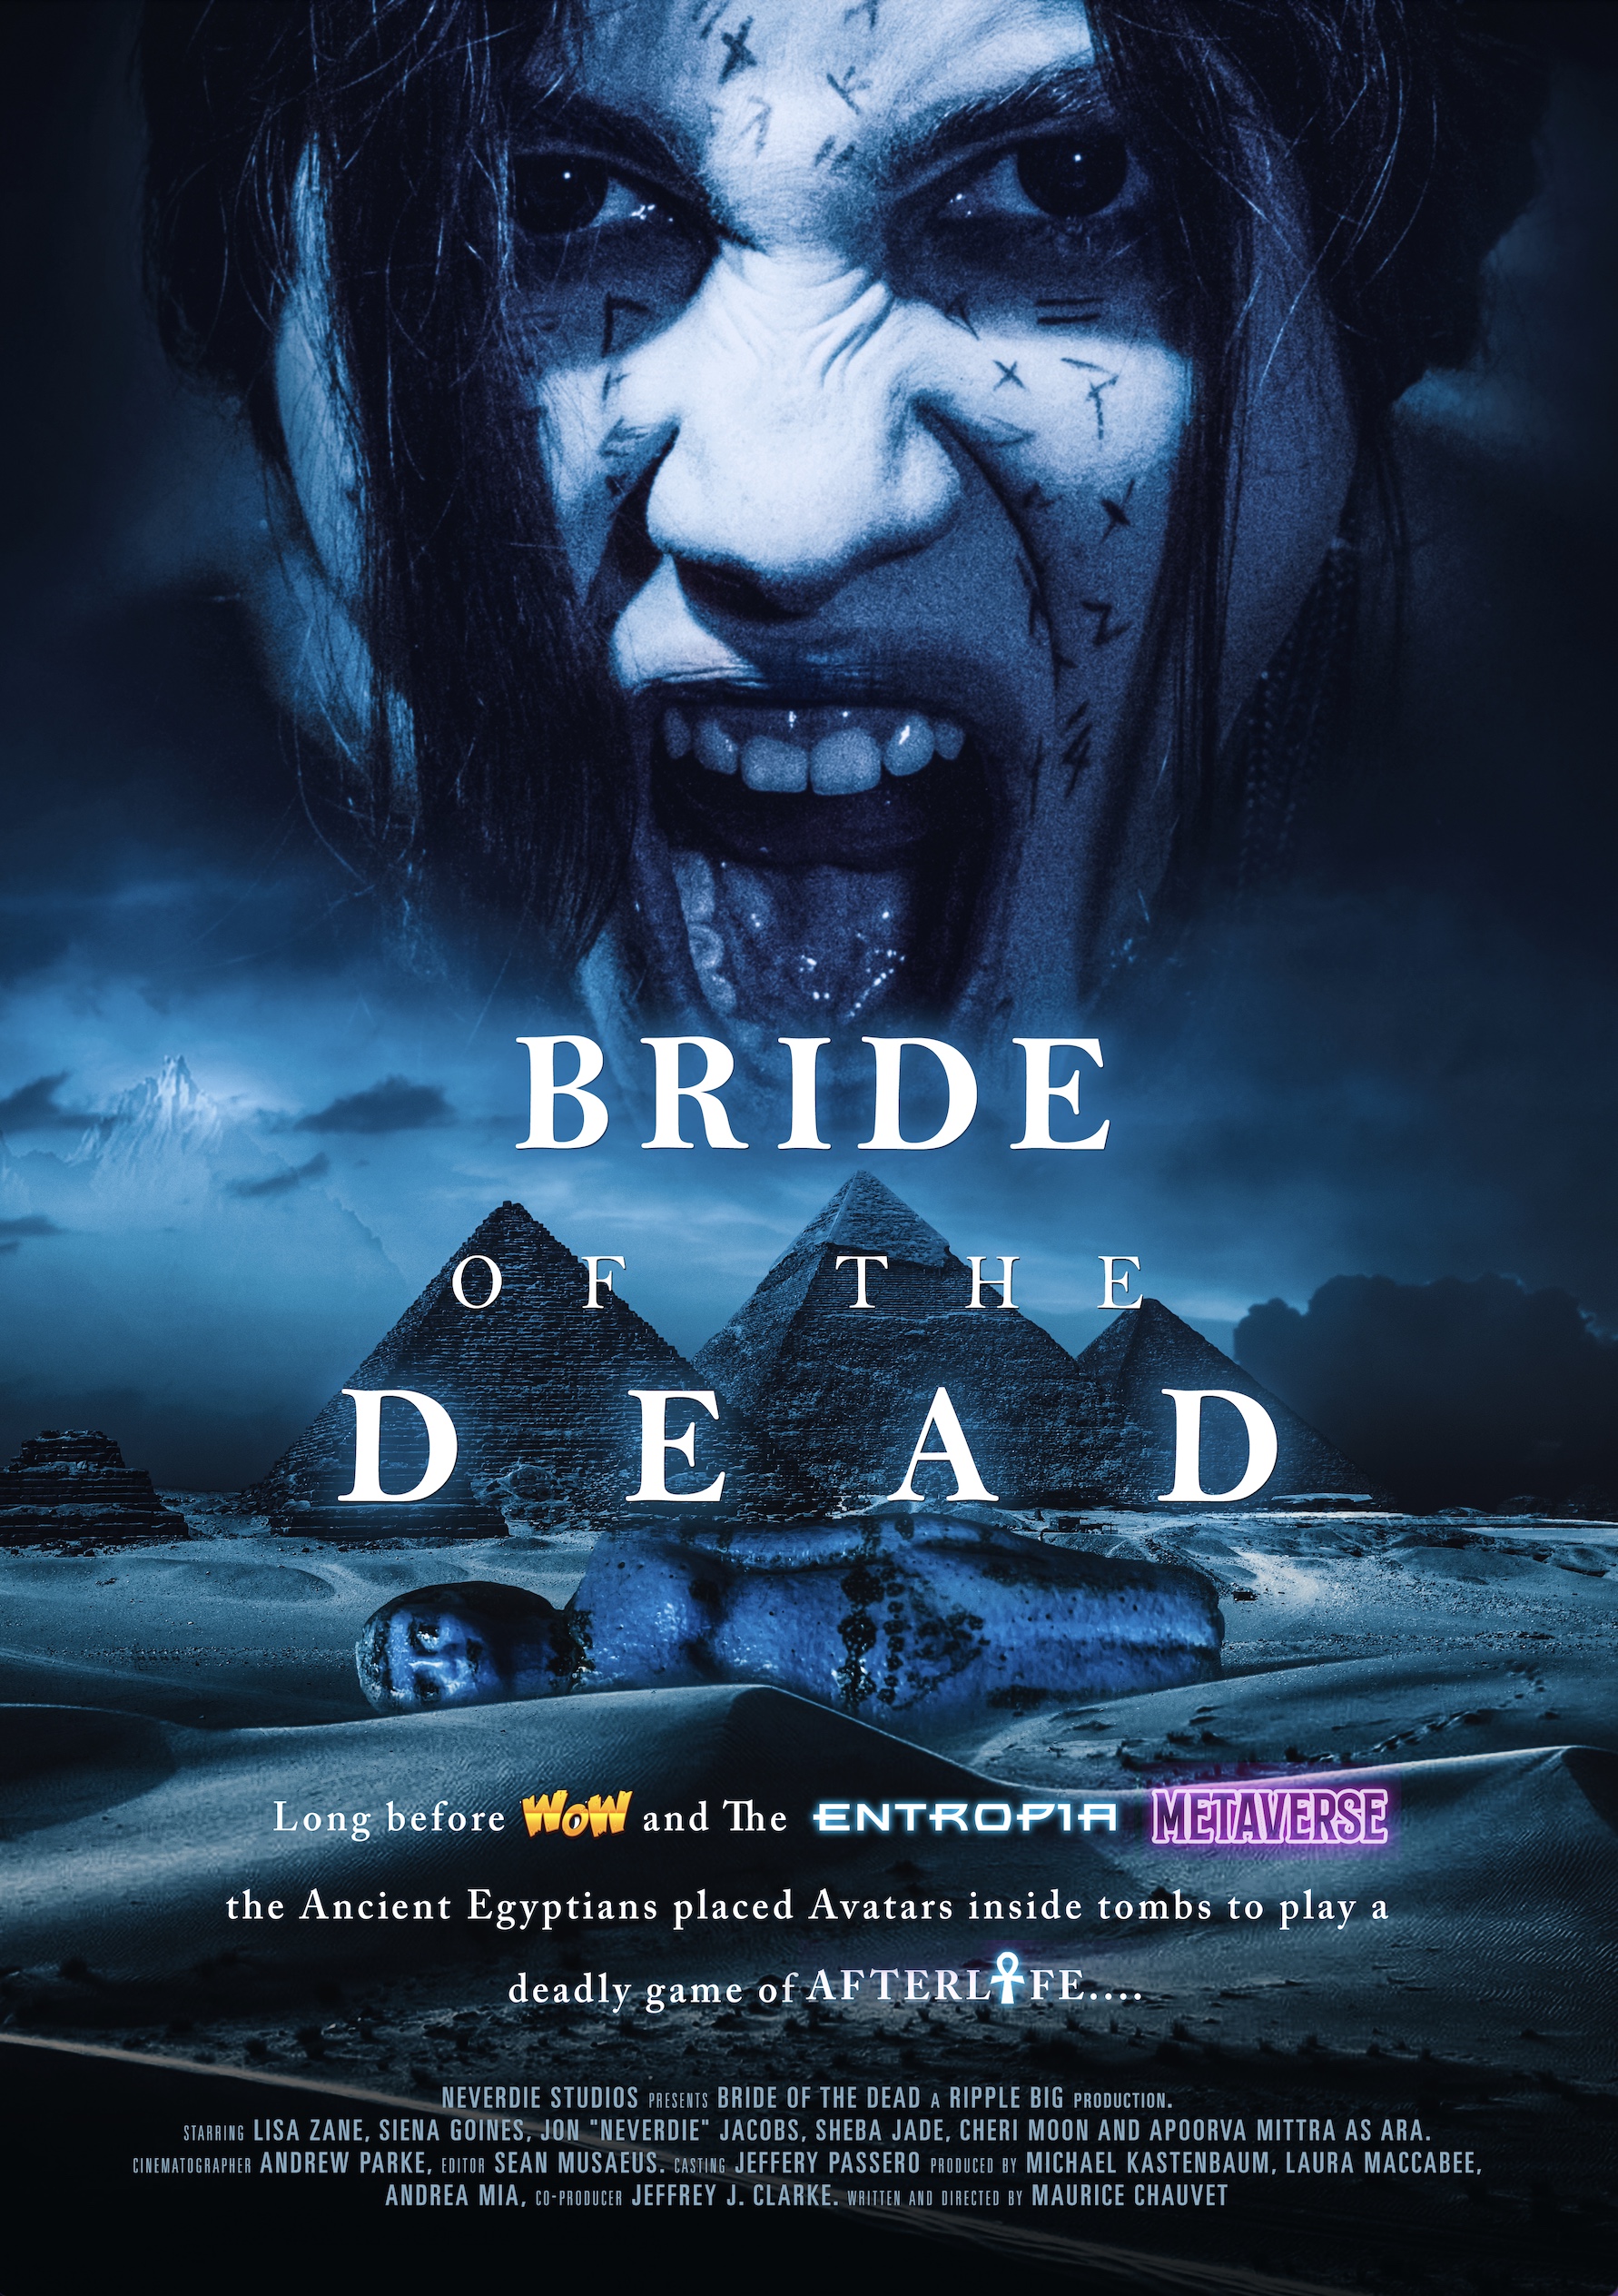 "Nightmare on Elm Street" Star Lisa Zane Leads Egypt Horror Film “Bride of the Dead”